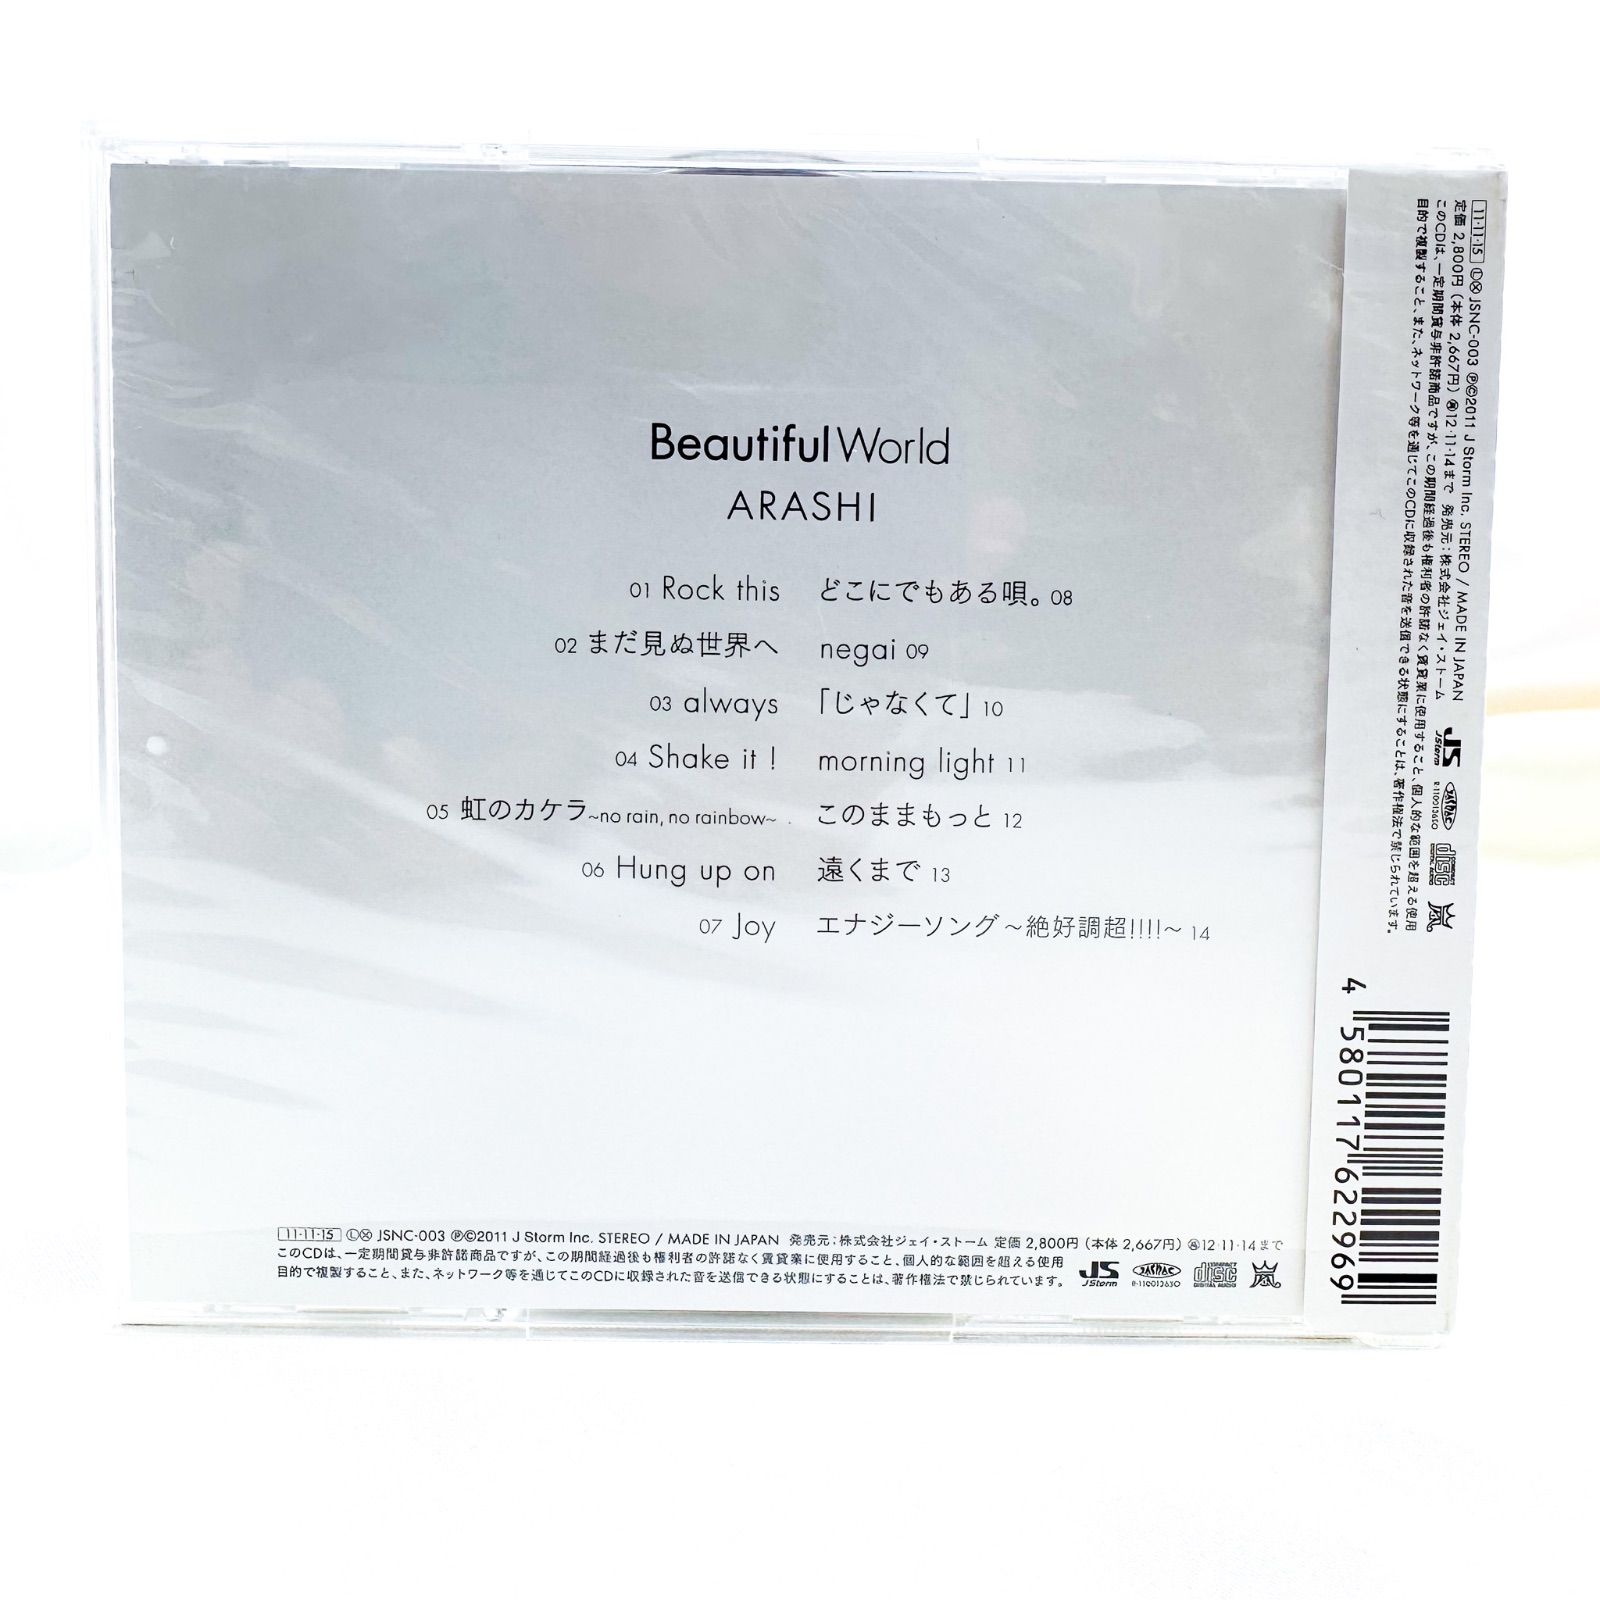 嵐 Beautiful World セブンネット 限定盤 エナジーソング - CD